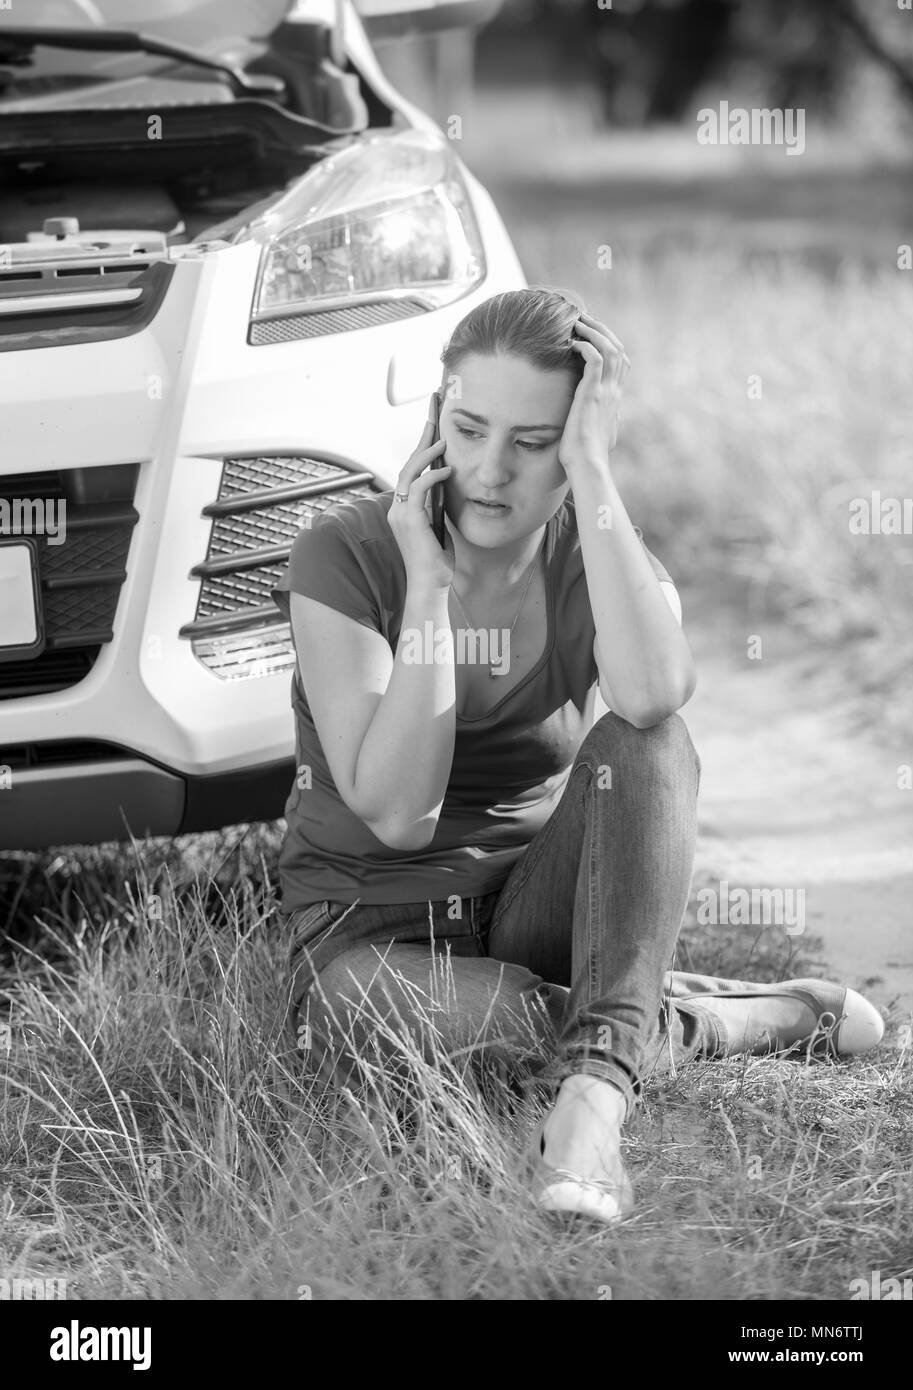 Image en noir et blanc de colère pleurer femme appelant un service en raison de son champ en automobile cassée Banque D'Images